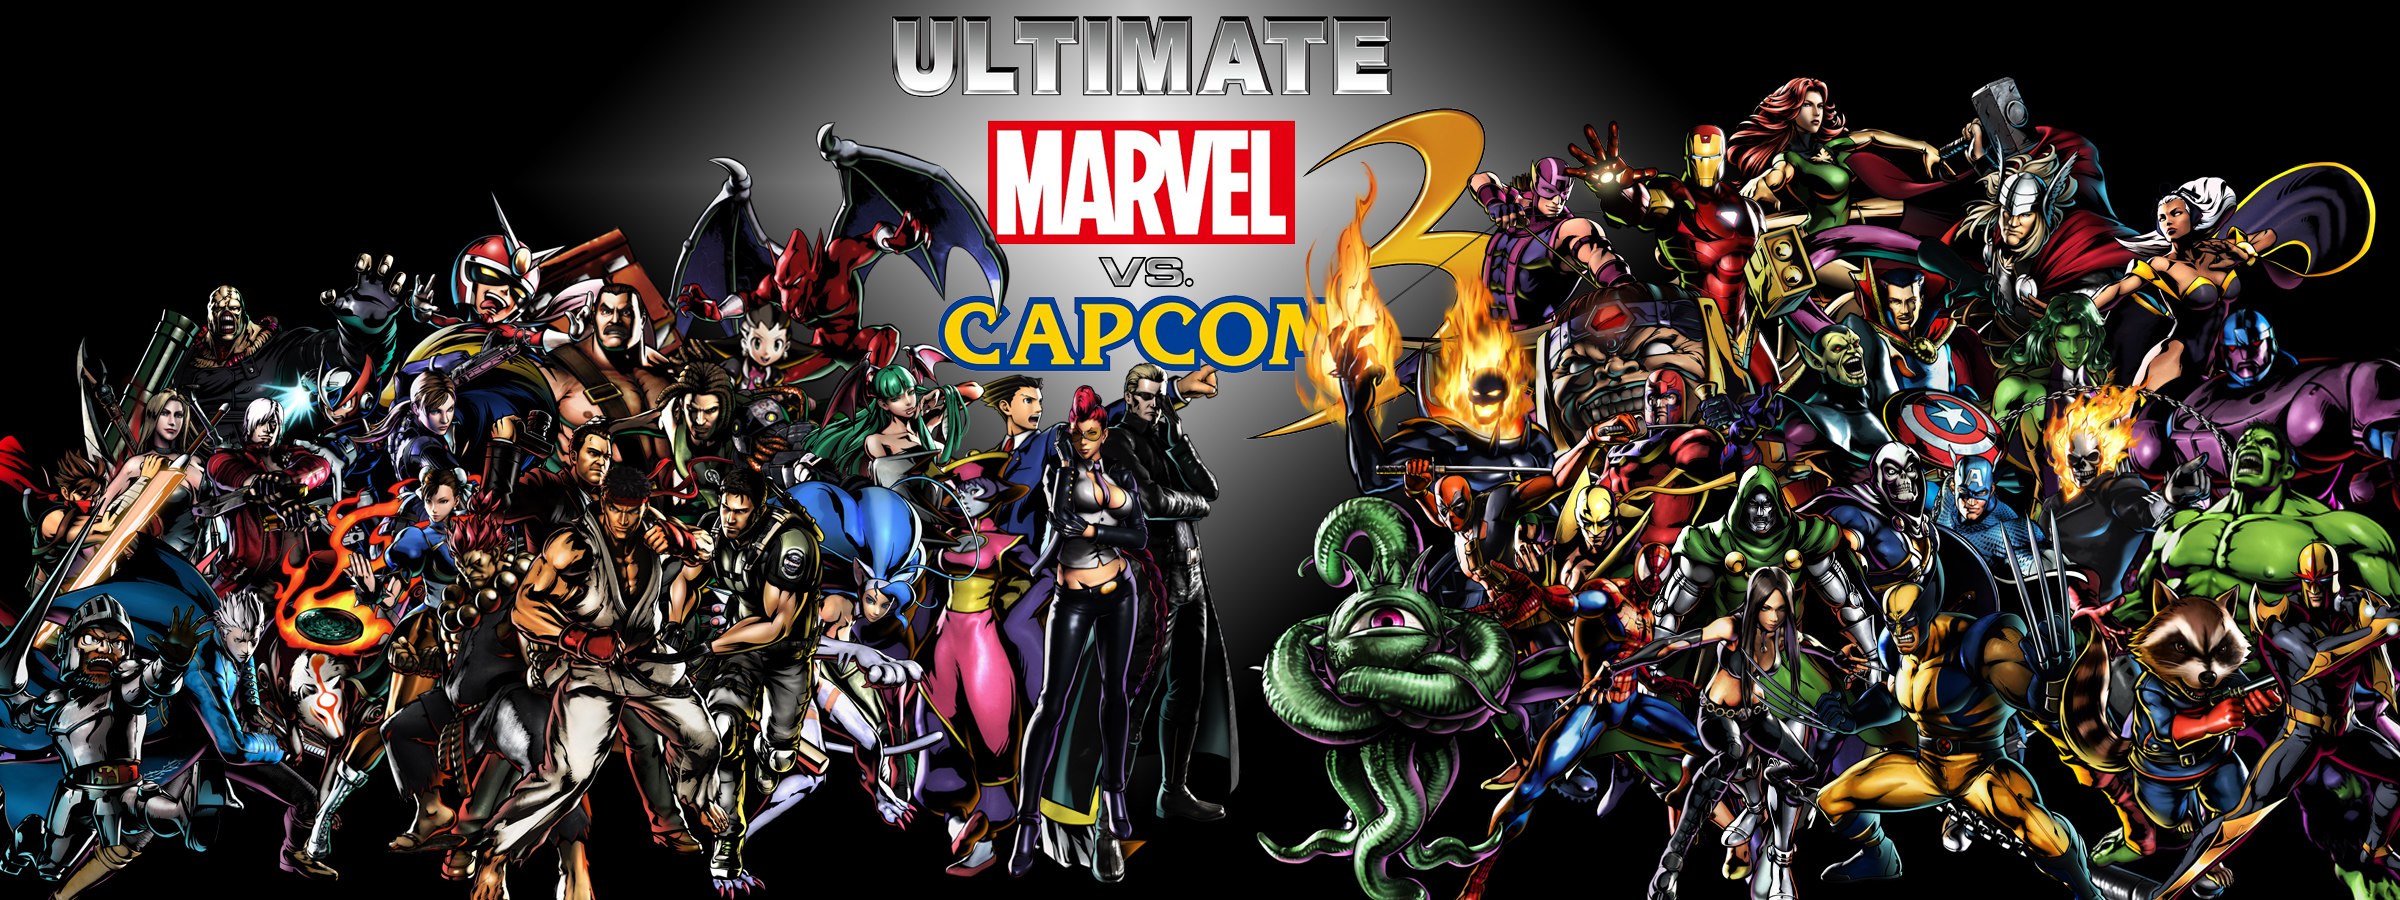 Marvel Vs. Capcom 3 #1